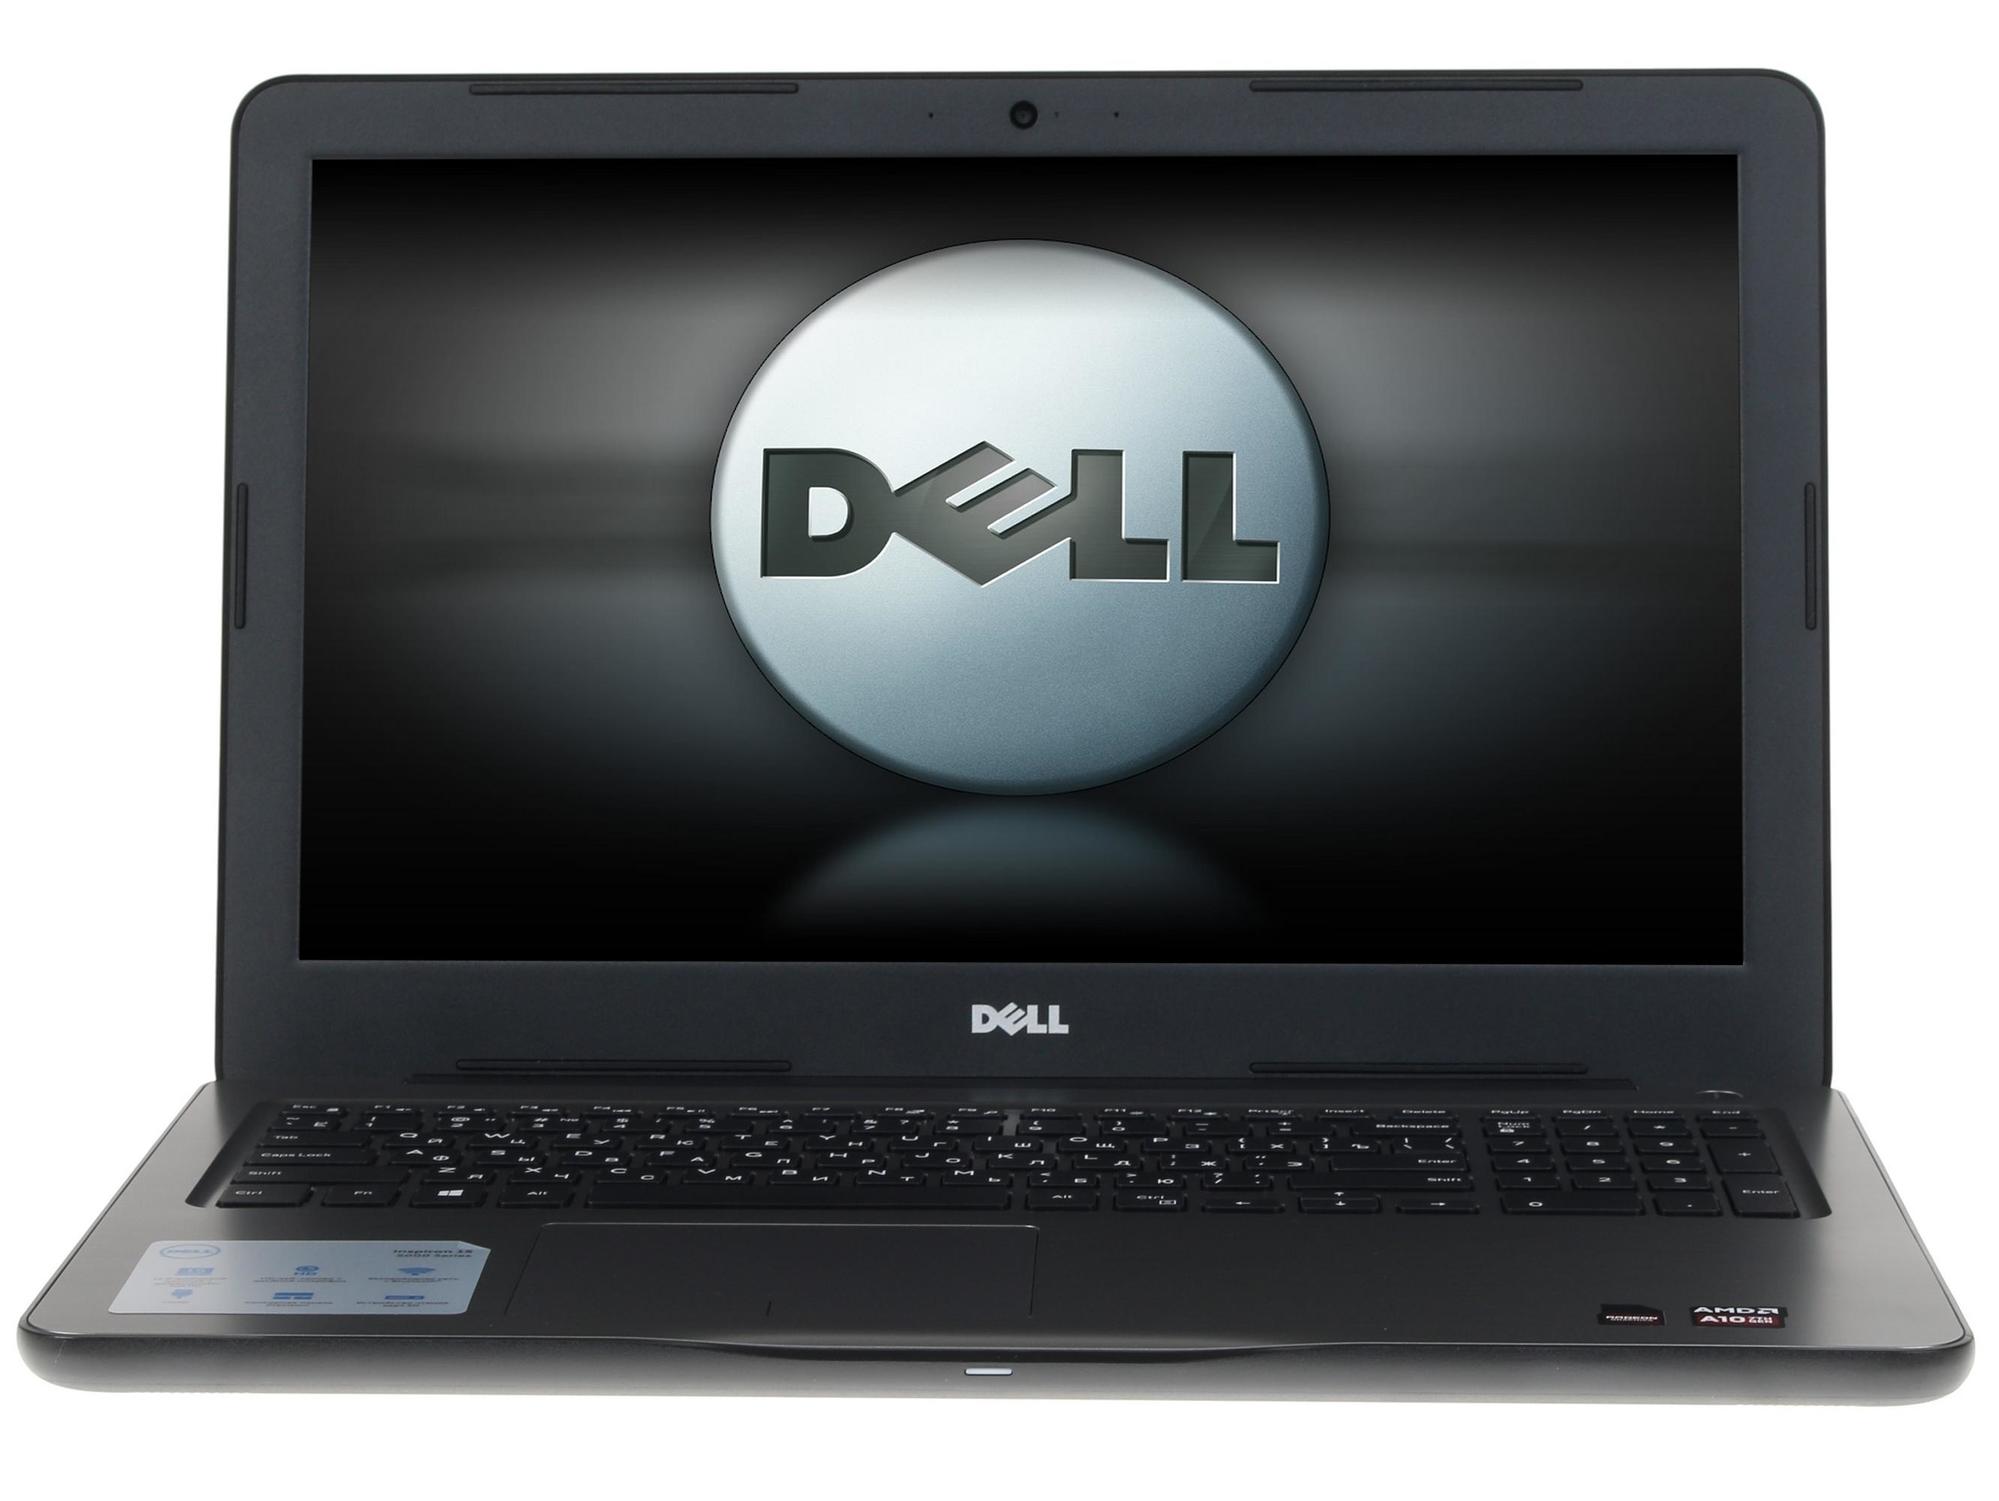 Ноутбук Dell Inspiron 5565 AMD A10-9600P/8Gb/1Tb/15.6 FHD Radeon R7 M445 4Gb/DVD-RW/WiFi/BT/Linux  (5565-7805)